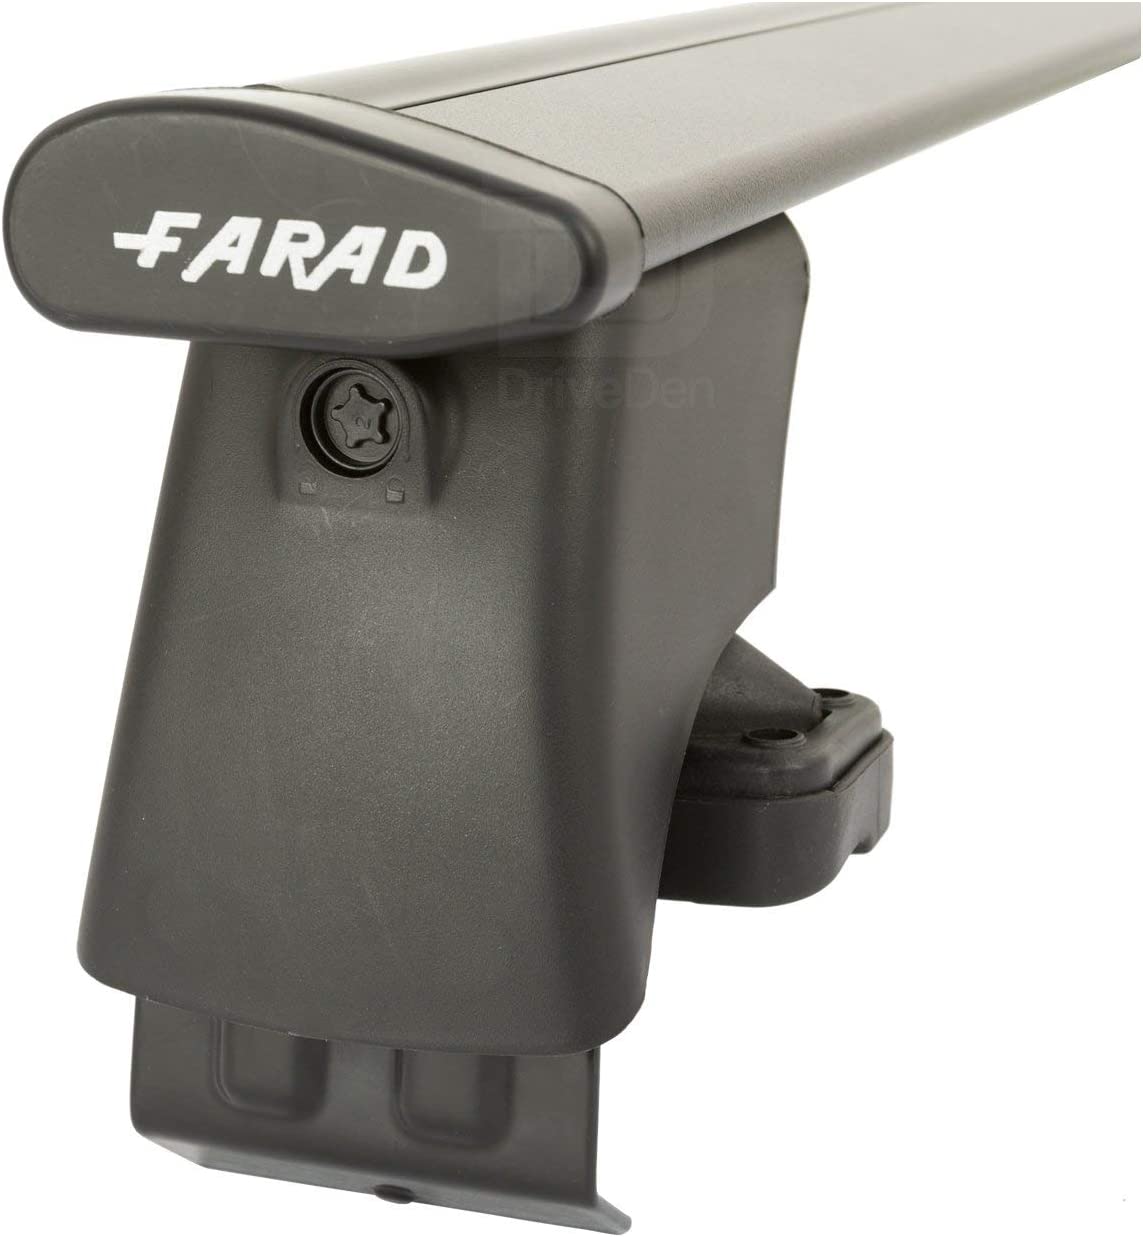 FARAD-Kit H2 per barre portatutto - Audi A3 2003-2012 (senza corrimano)